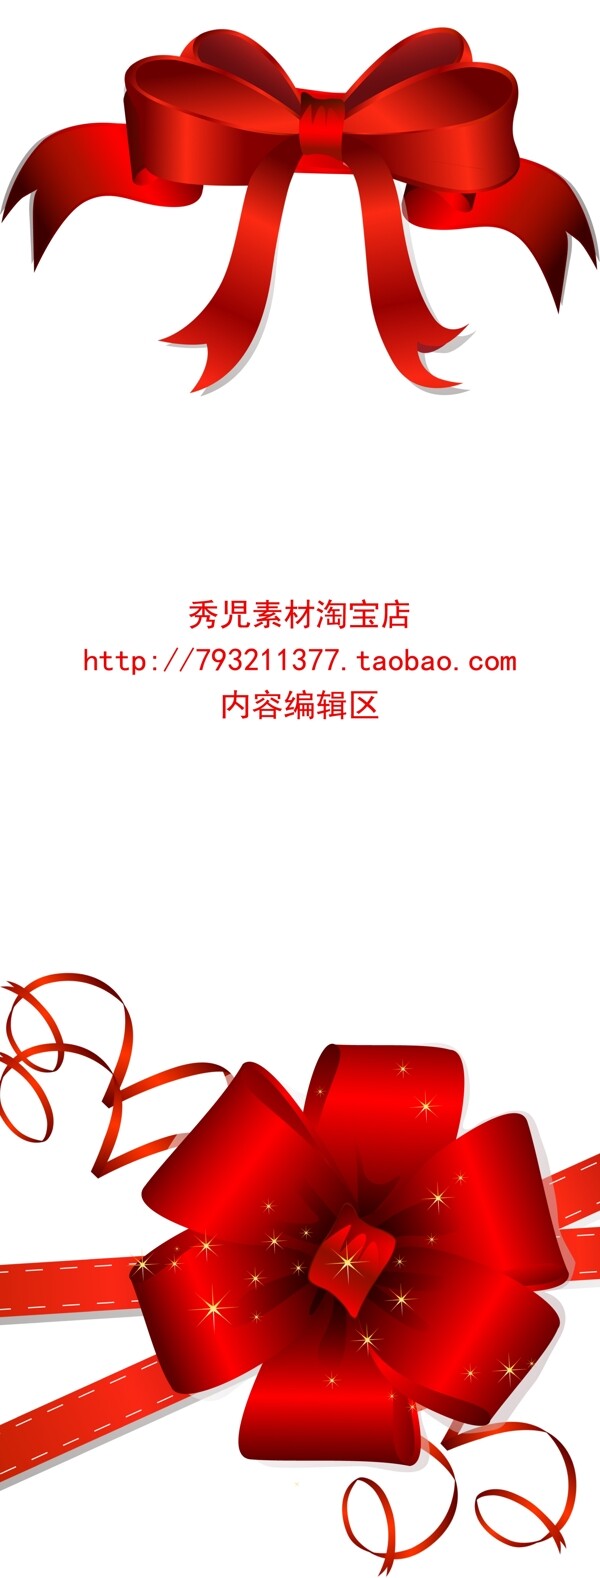 精美红色中国结展架设计模板素材海报画面